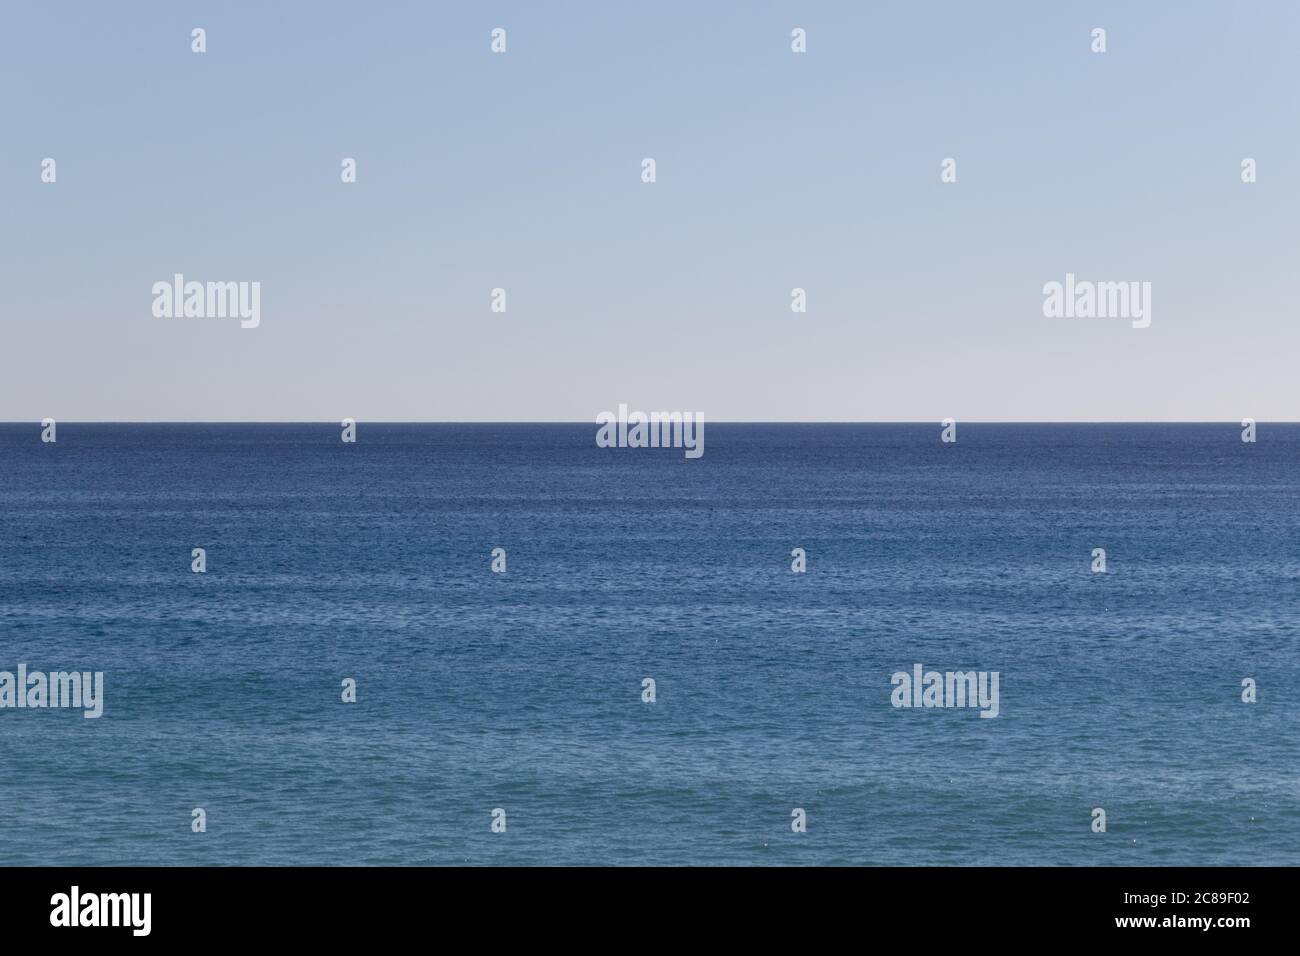 Das Tyrrhenische Meer mit ruhigem Wasser, klarem Himmel, Horizont über Wasser. Aufgenommen von der Insel Ischia vor der Küste bei Neapel, Italien. Keine Personen. Stockfoto